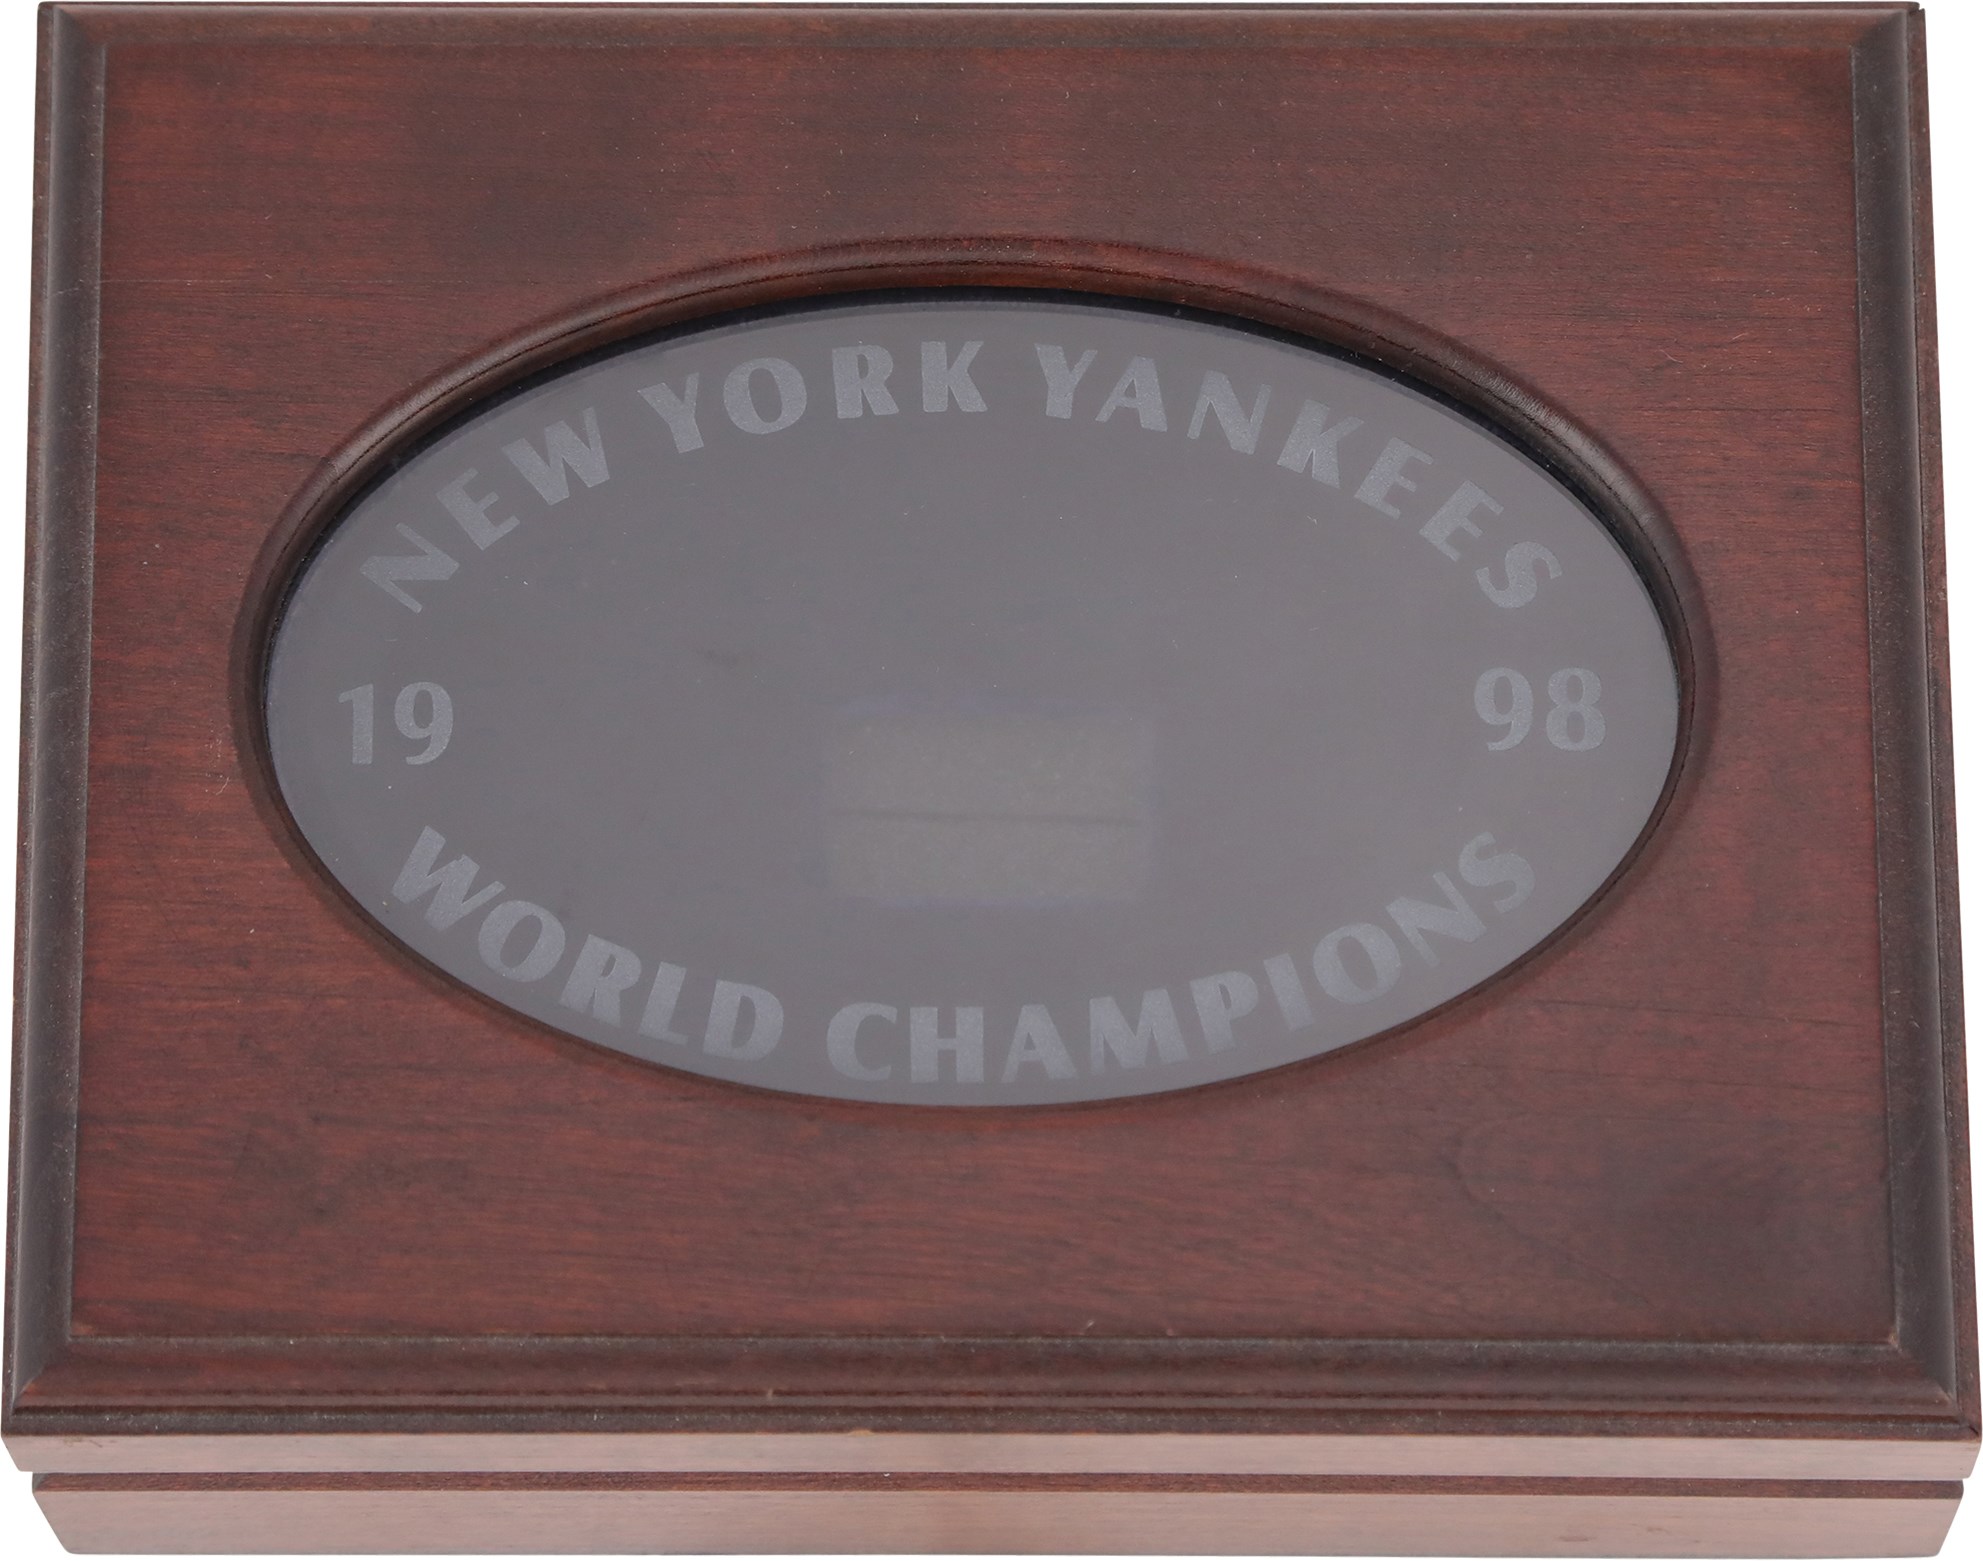 Baseball Awards - 1998 New York Yankees World Championship Ring Display Box